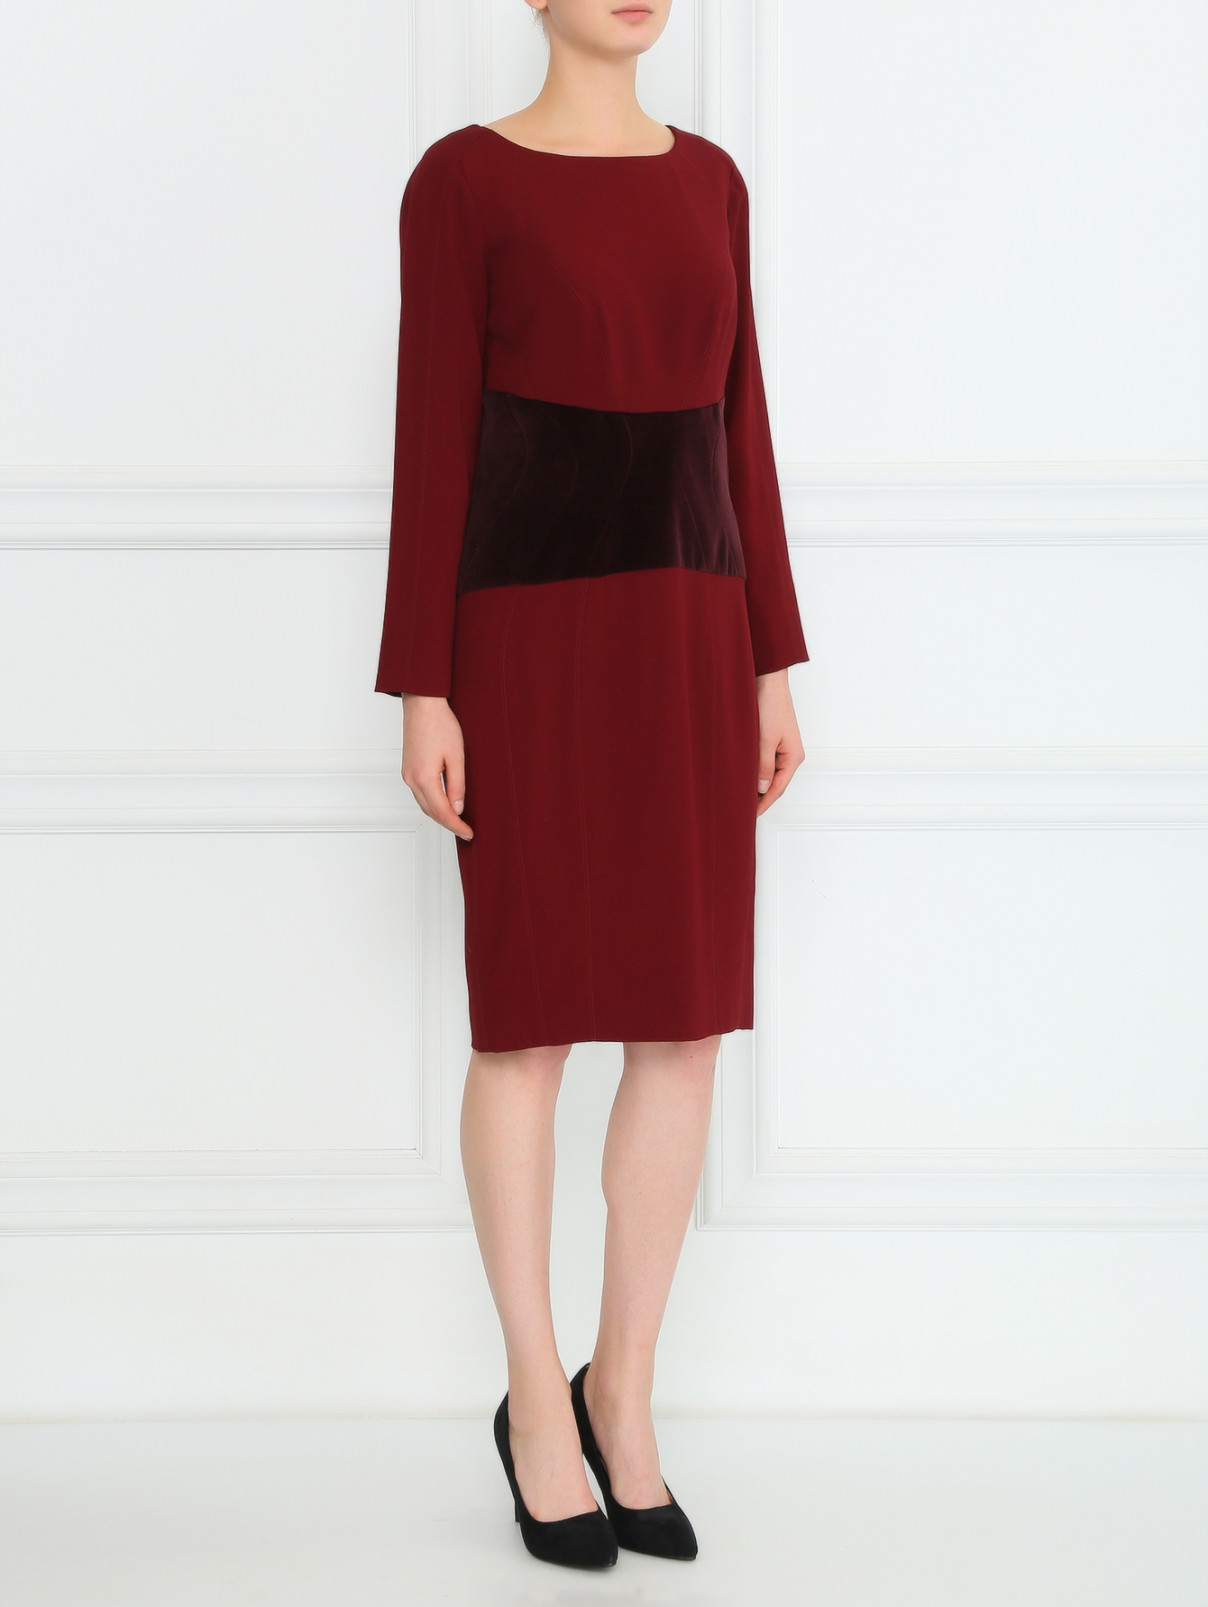 Платье-футляр с бархатной вставкой Zac Posen  –  Модель Общий вид  – Цвет:  Красный